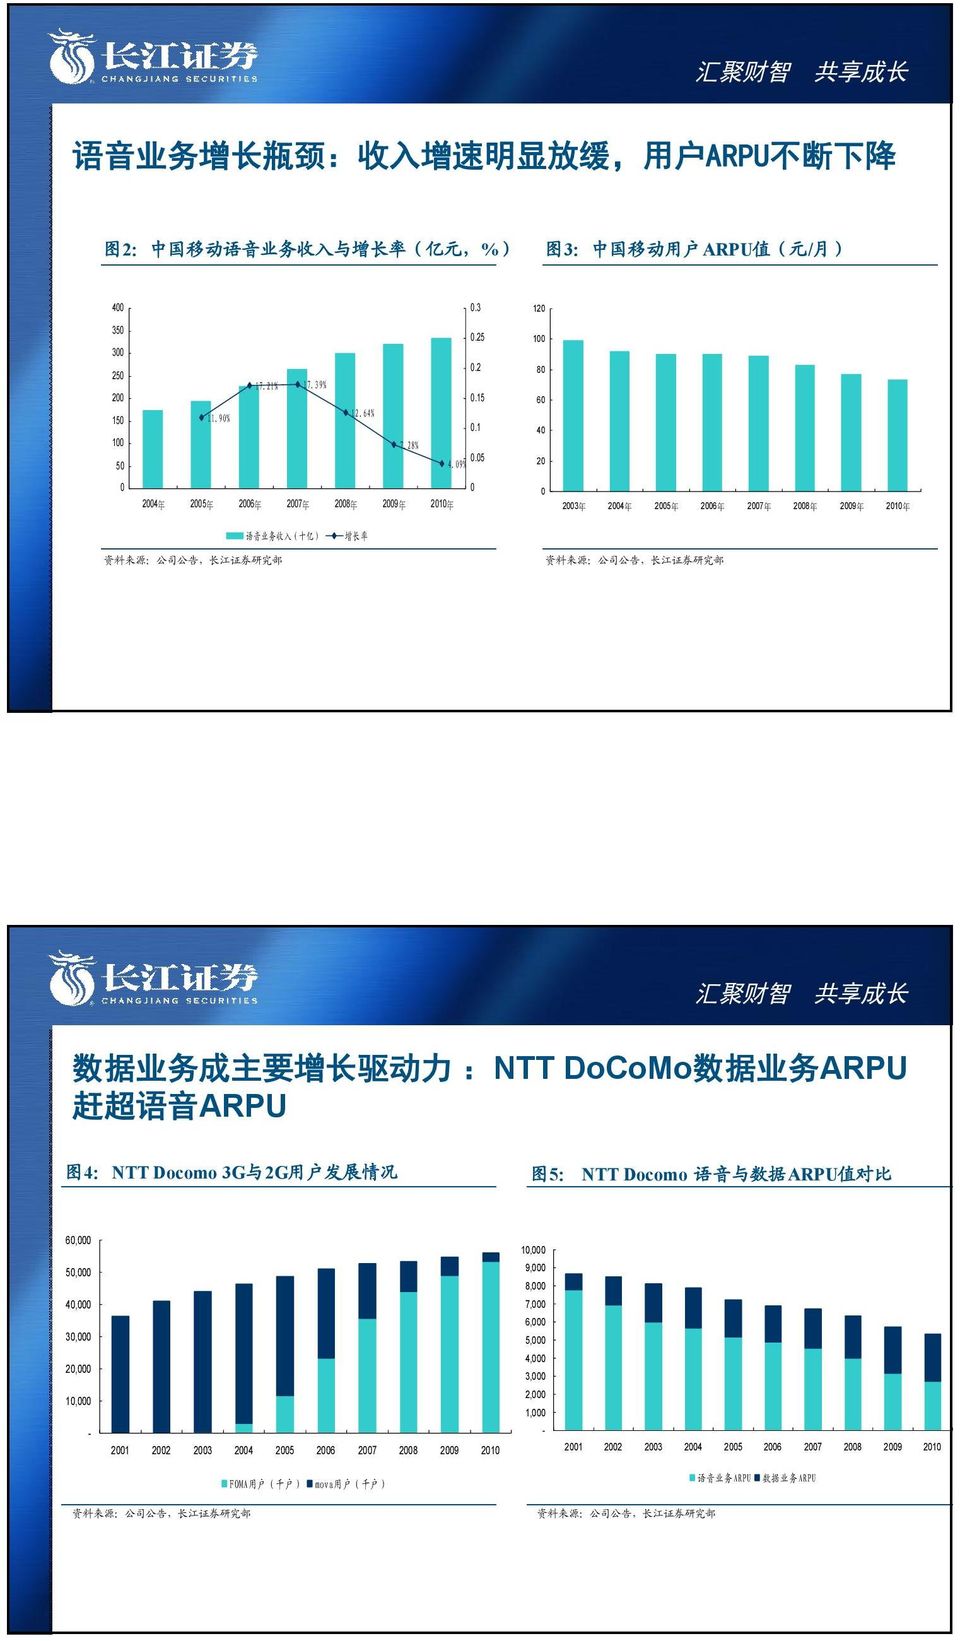 9% 1 8 6 4 2 24 年 25 年 26 年 27 年 28 年 29 年 21 年 23 年 24 年 25 年 26 年 27 年 28 年 29 年 21 年 语 音 业 务 收 入 ( 十 亿 ) 增 长 率 数 据 业 务 成 主 要 增 长 驱 动 力 :NTT DoCoMo 数 据